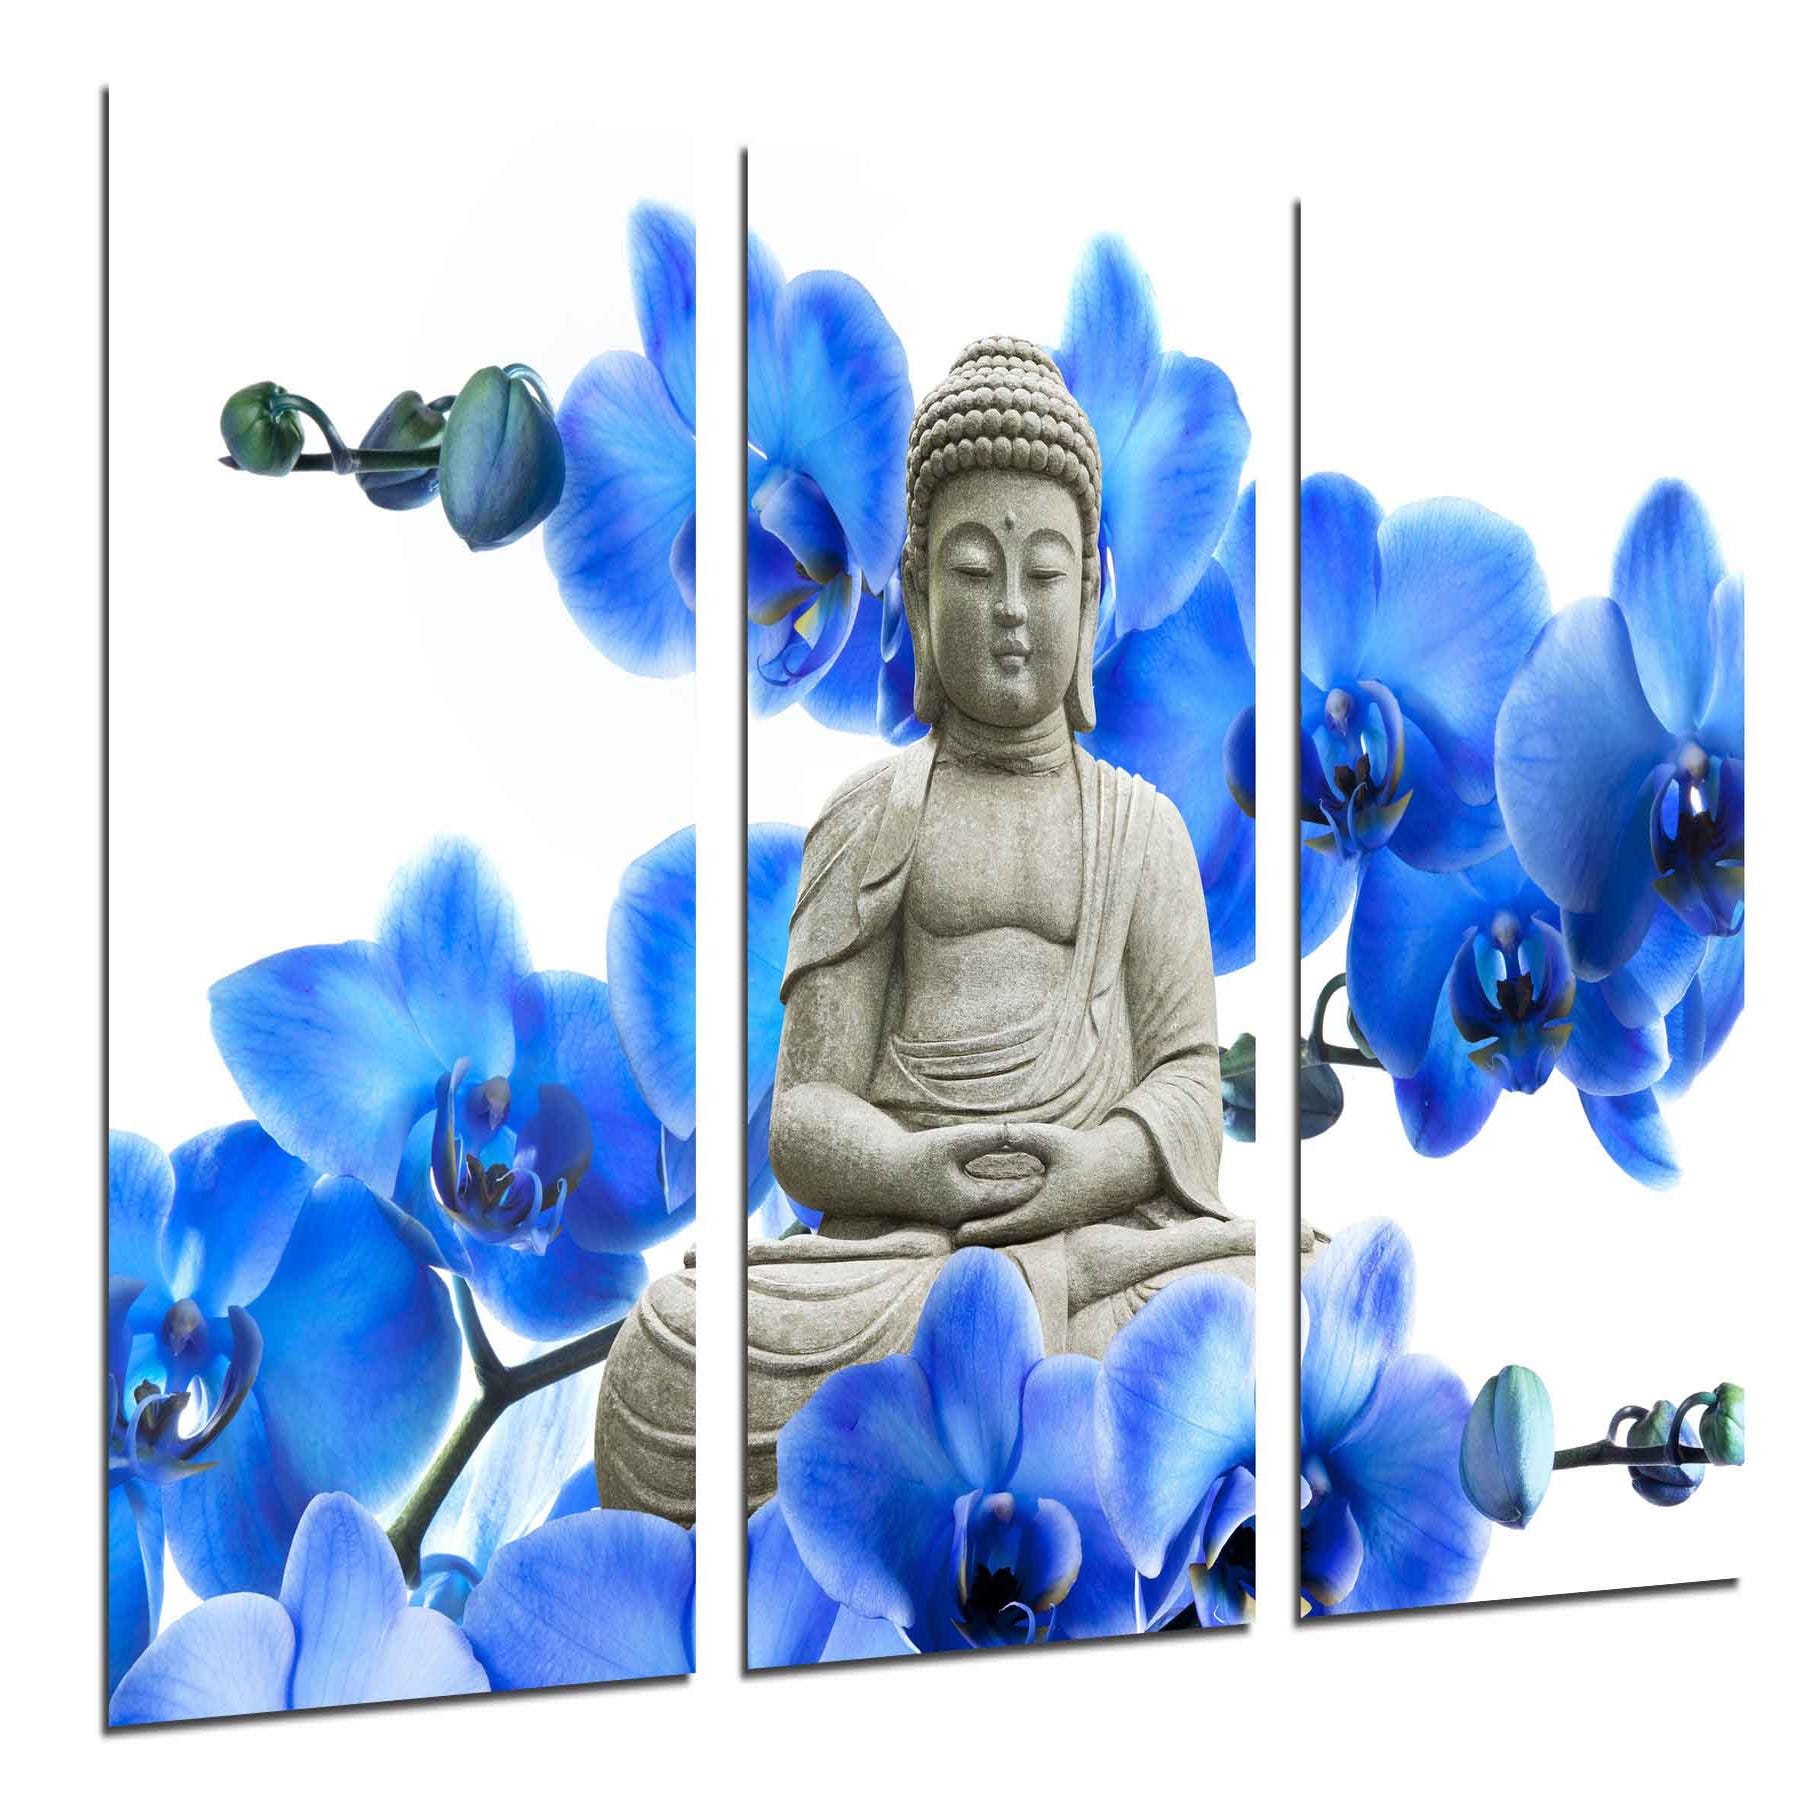 Buda, Buddha, Relajacion, Relax, Zen, impresión fotográfica sobre madera,  cuadro moderno decorativo